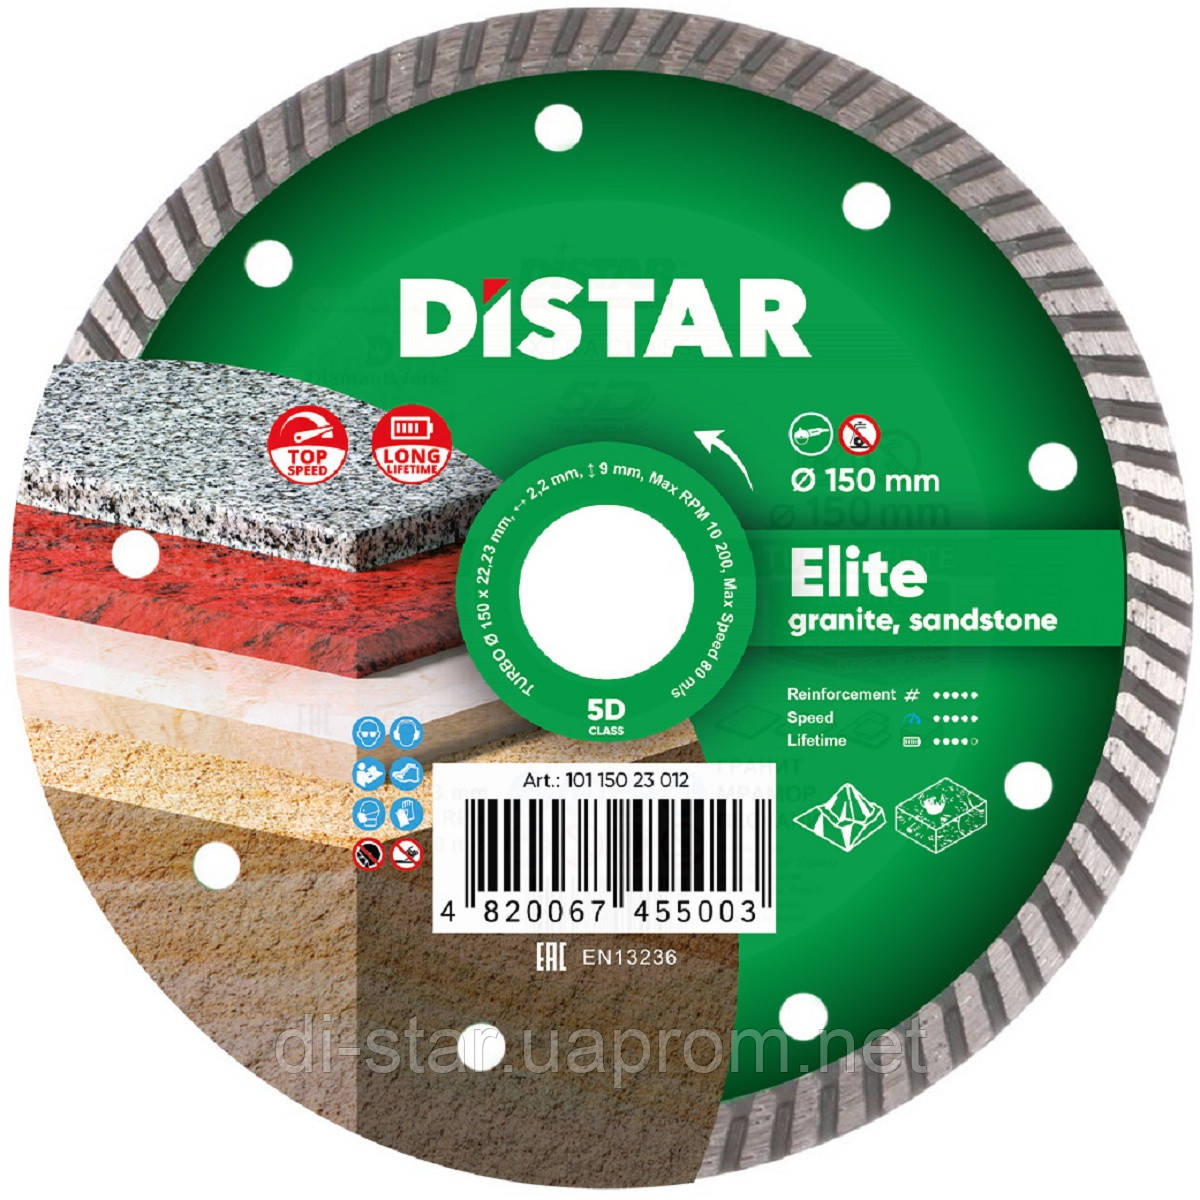 Круг алмазний Distar Turbo Elite 150 мм відрізний диск по граніту та базальту для КШМ, Дистар, Україна